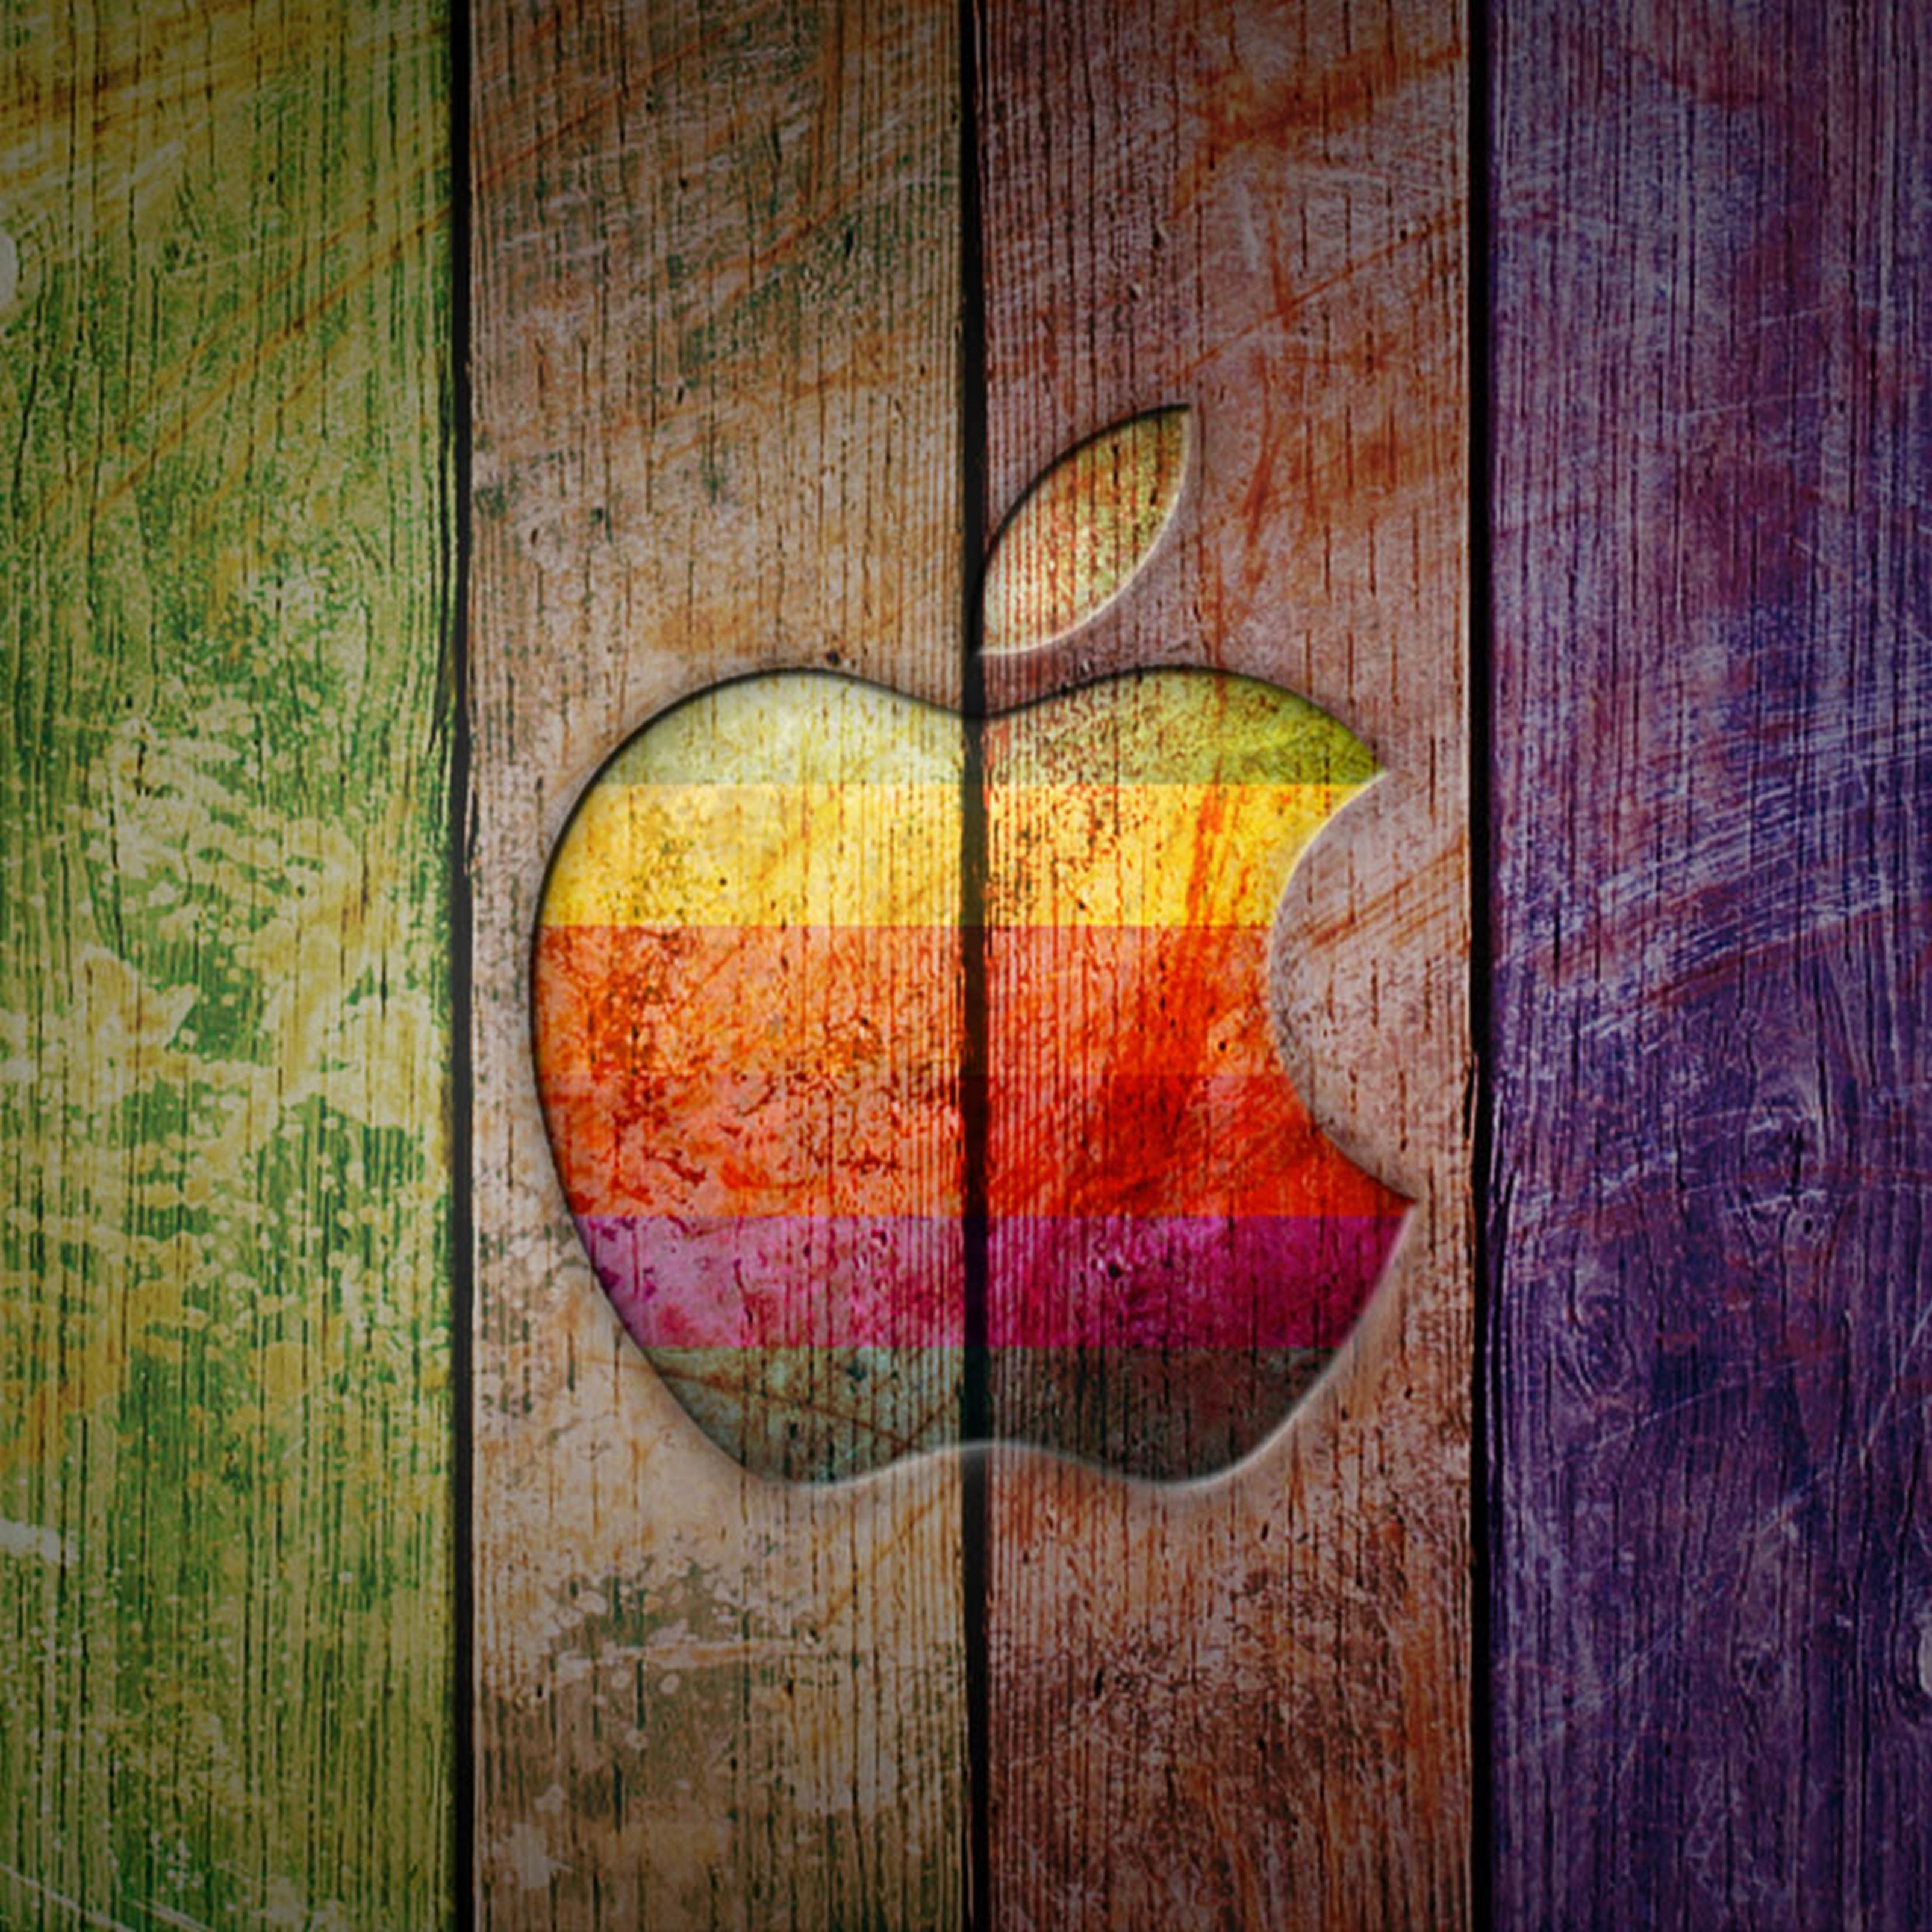 3208x3208 iPad Pro wallpaper 4k Apple Logo on Colorful Wood Ipad Wallpaper 3208x3208 pixels resolution